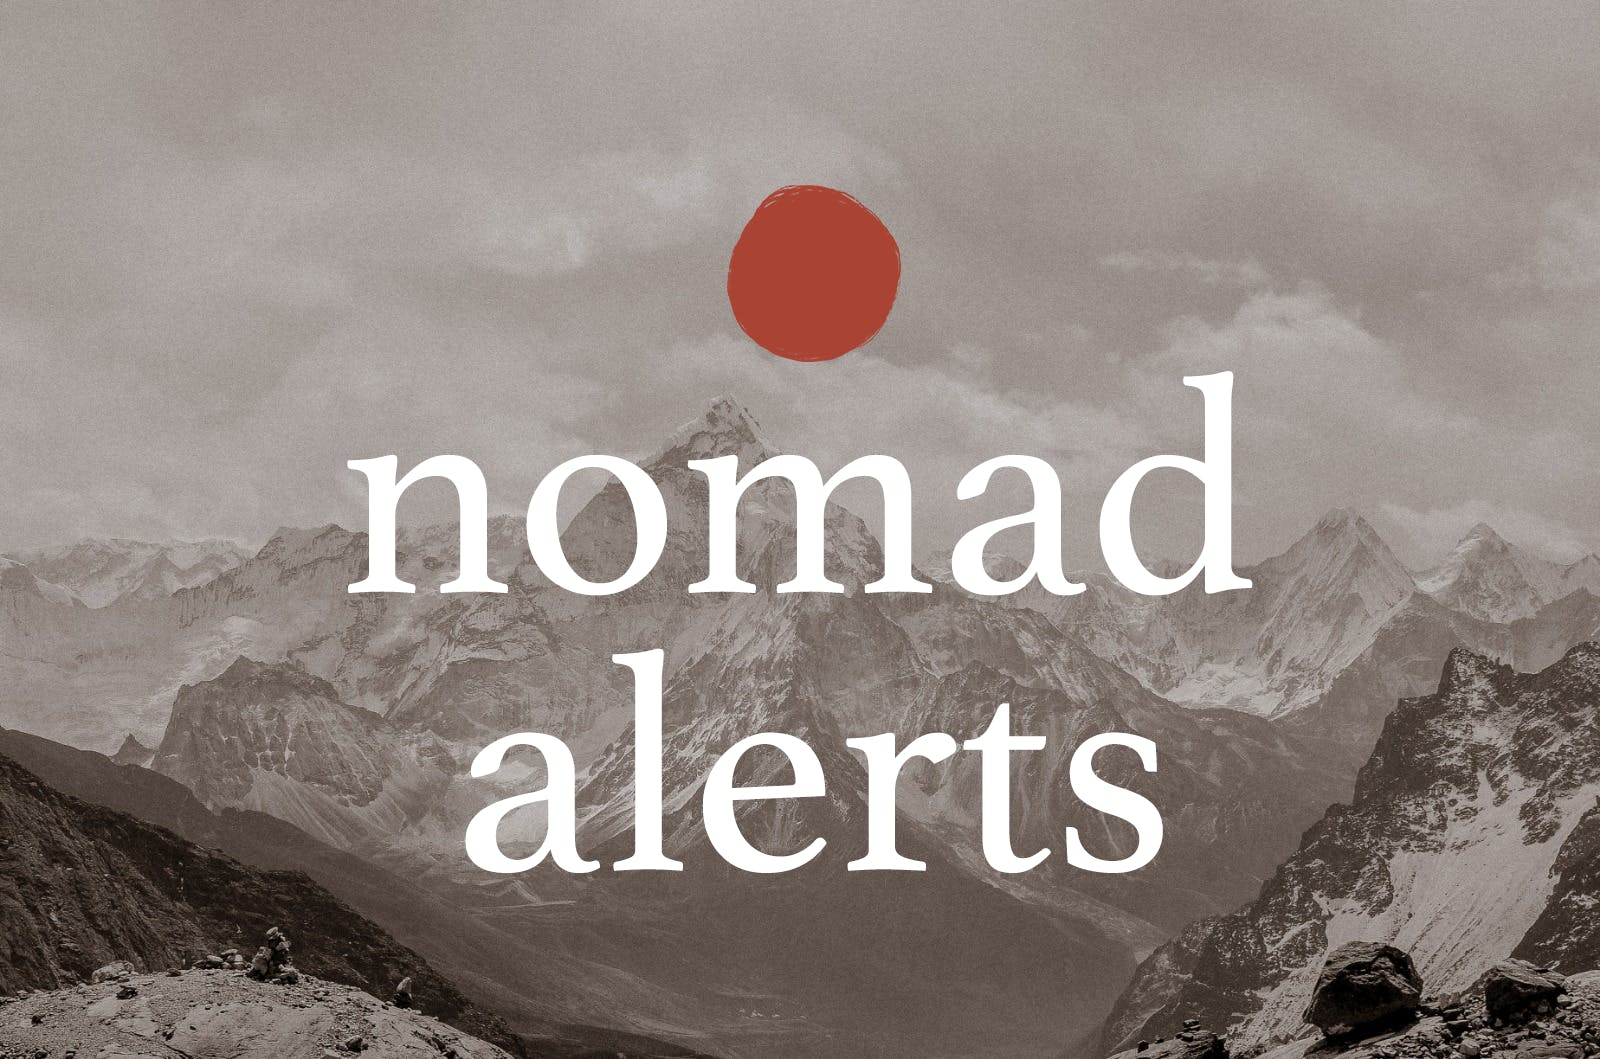 nomad alerts media 1